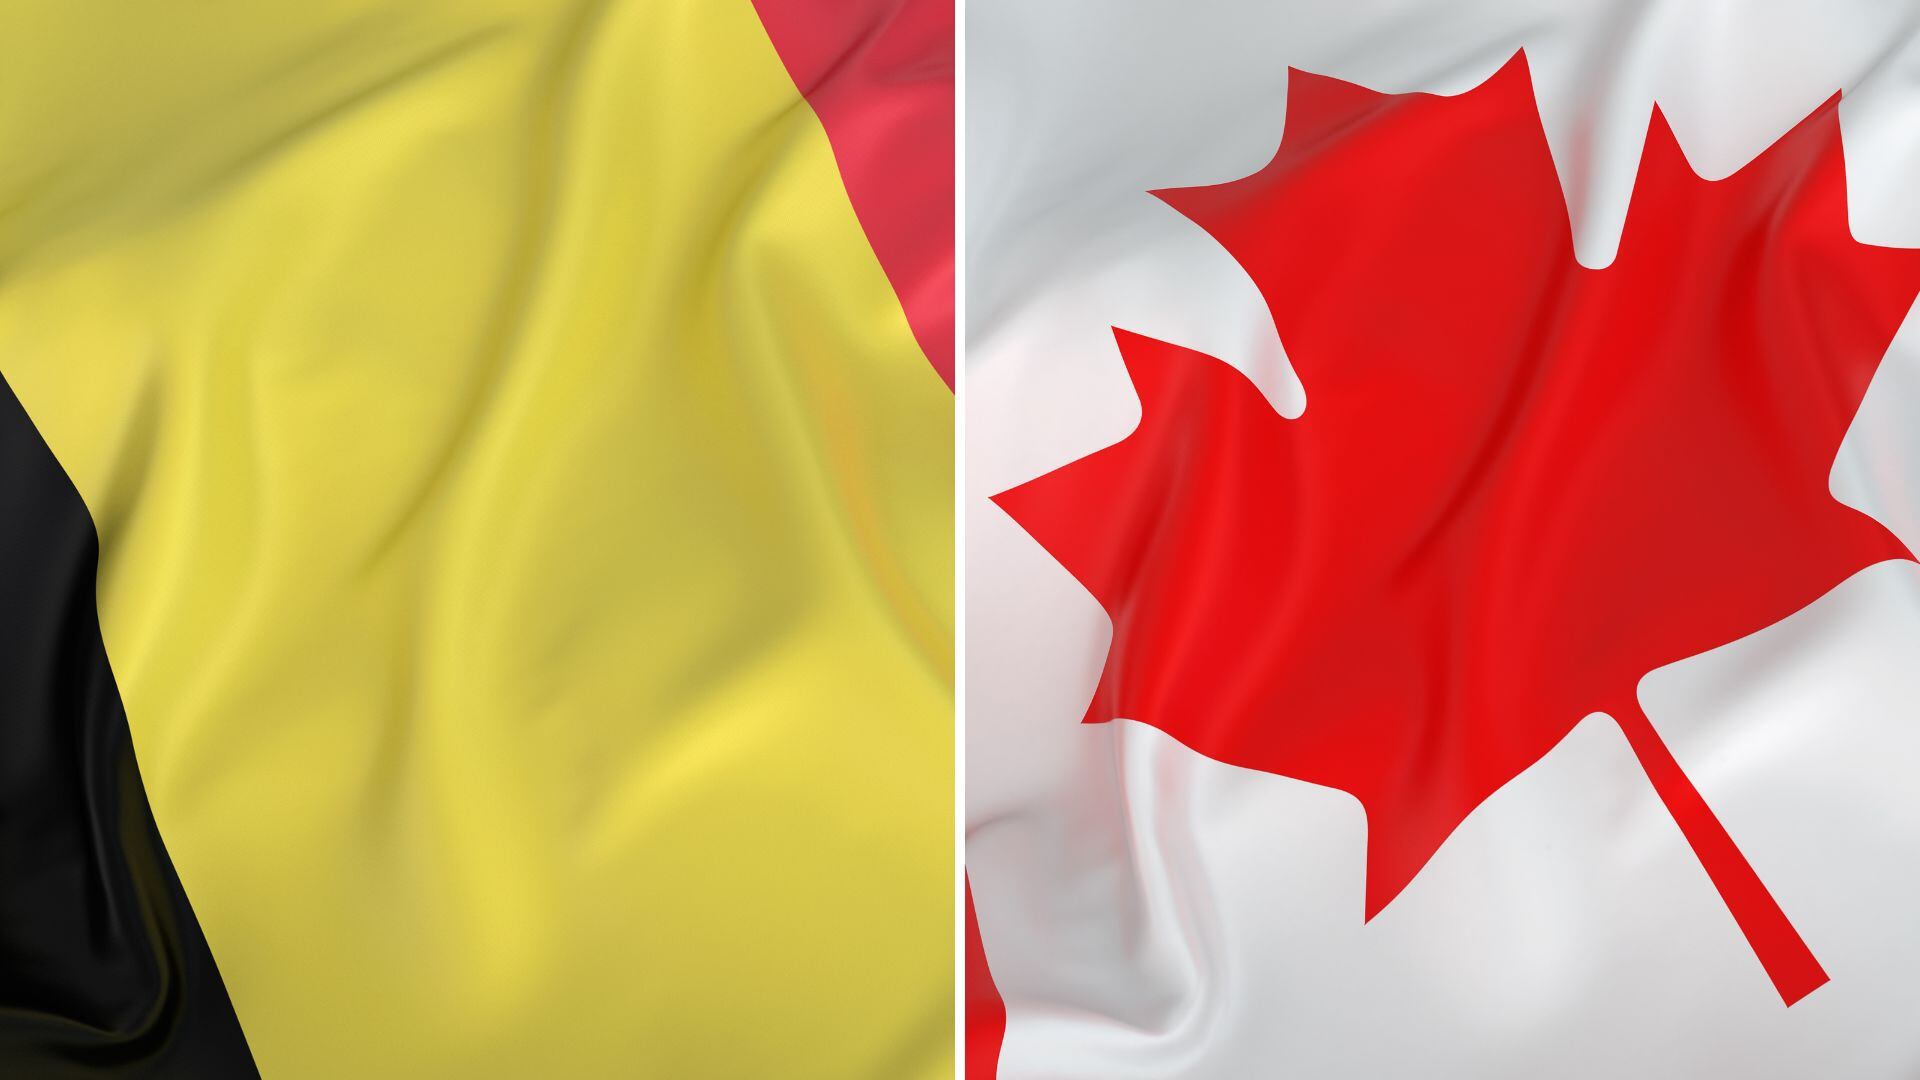 Bélgica vs. Canadá